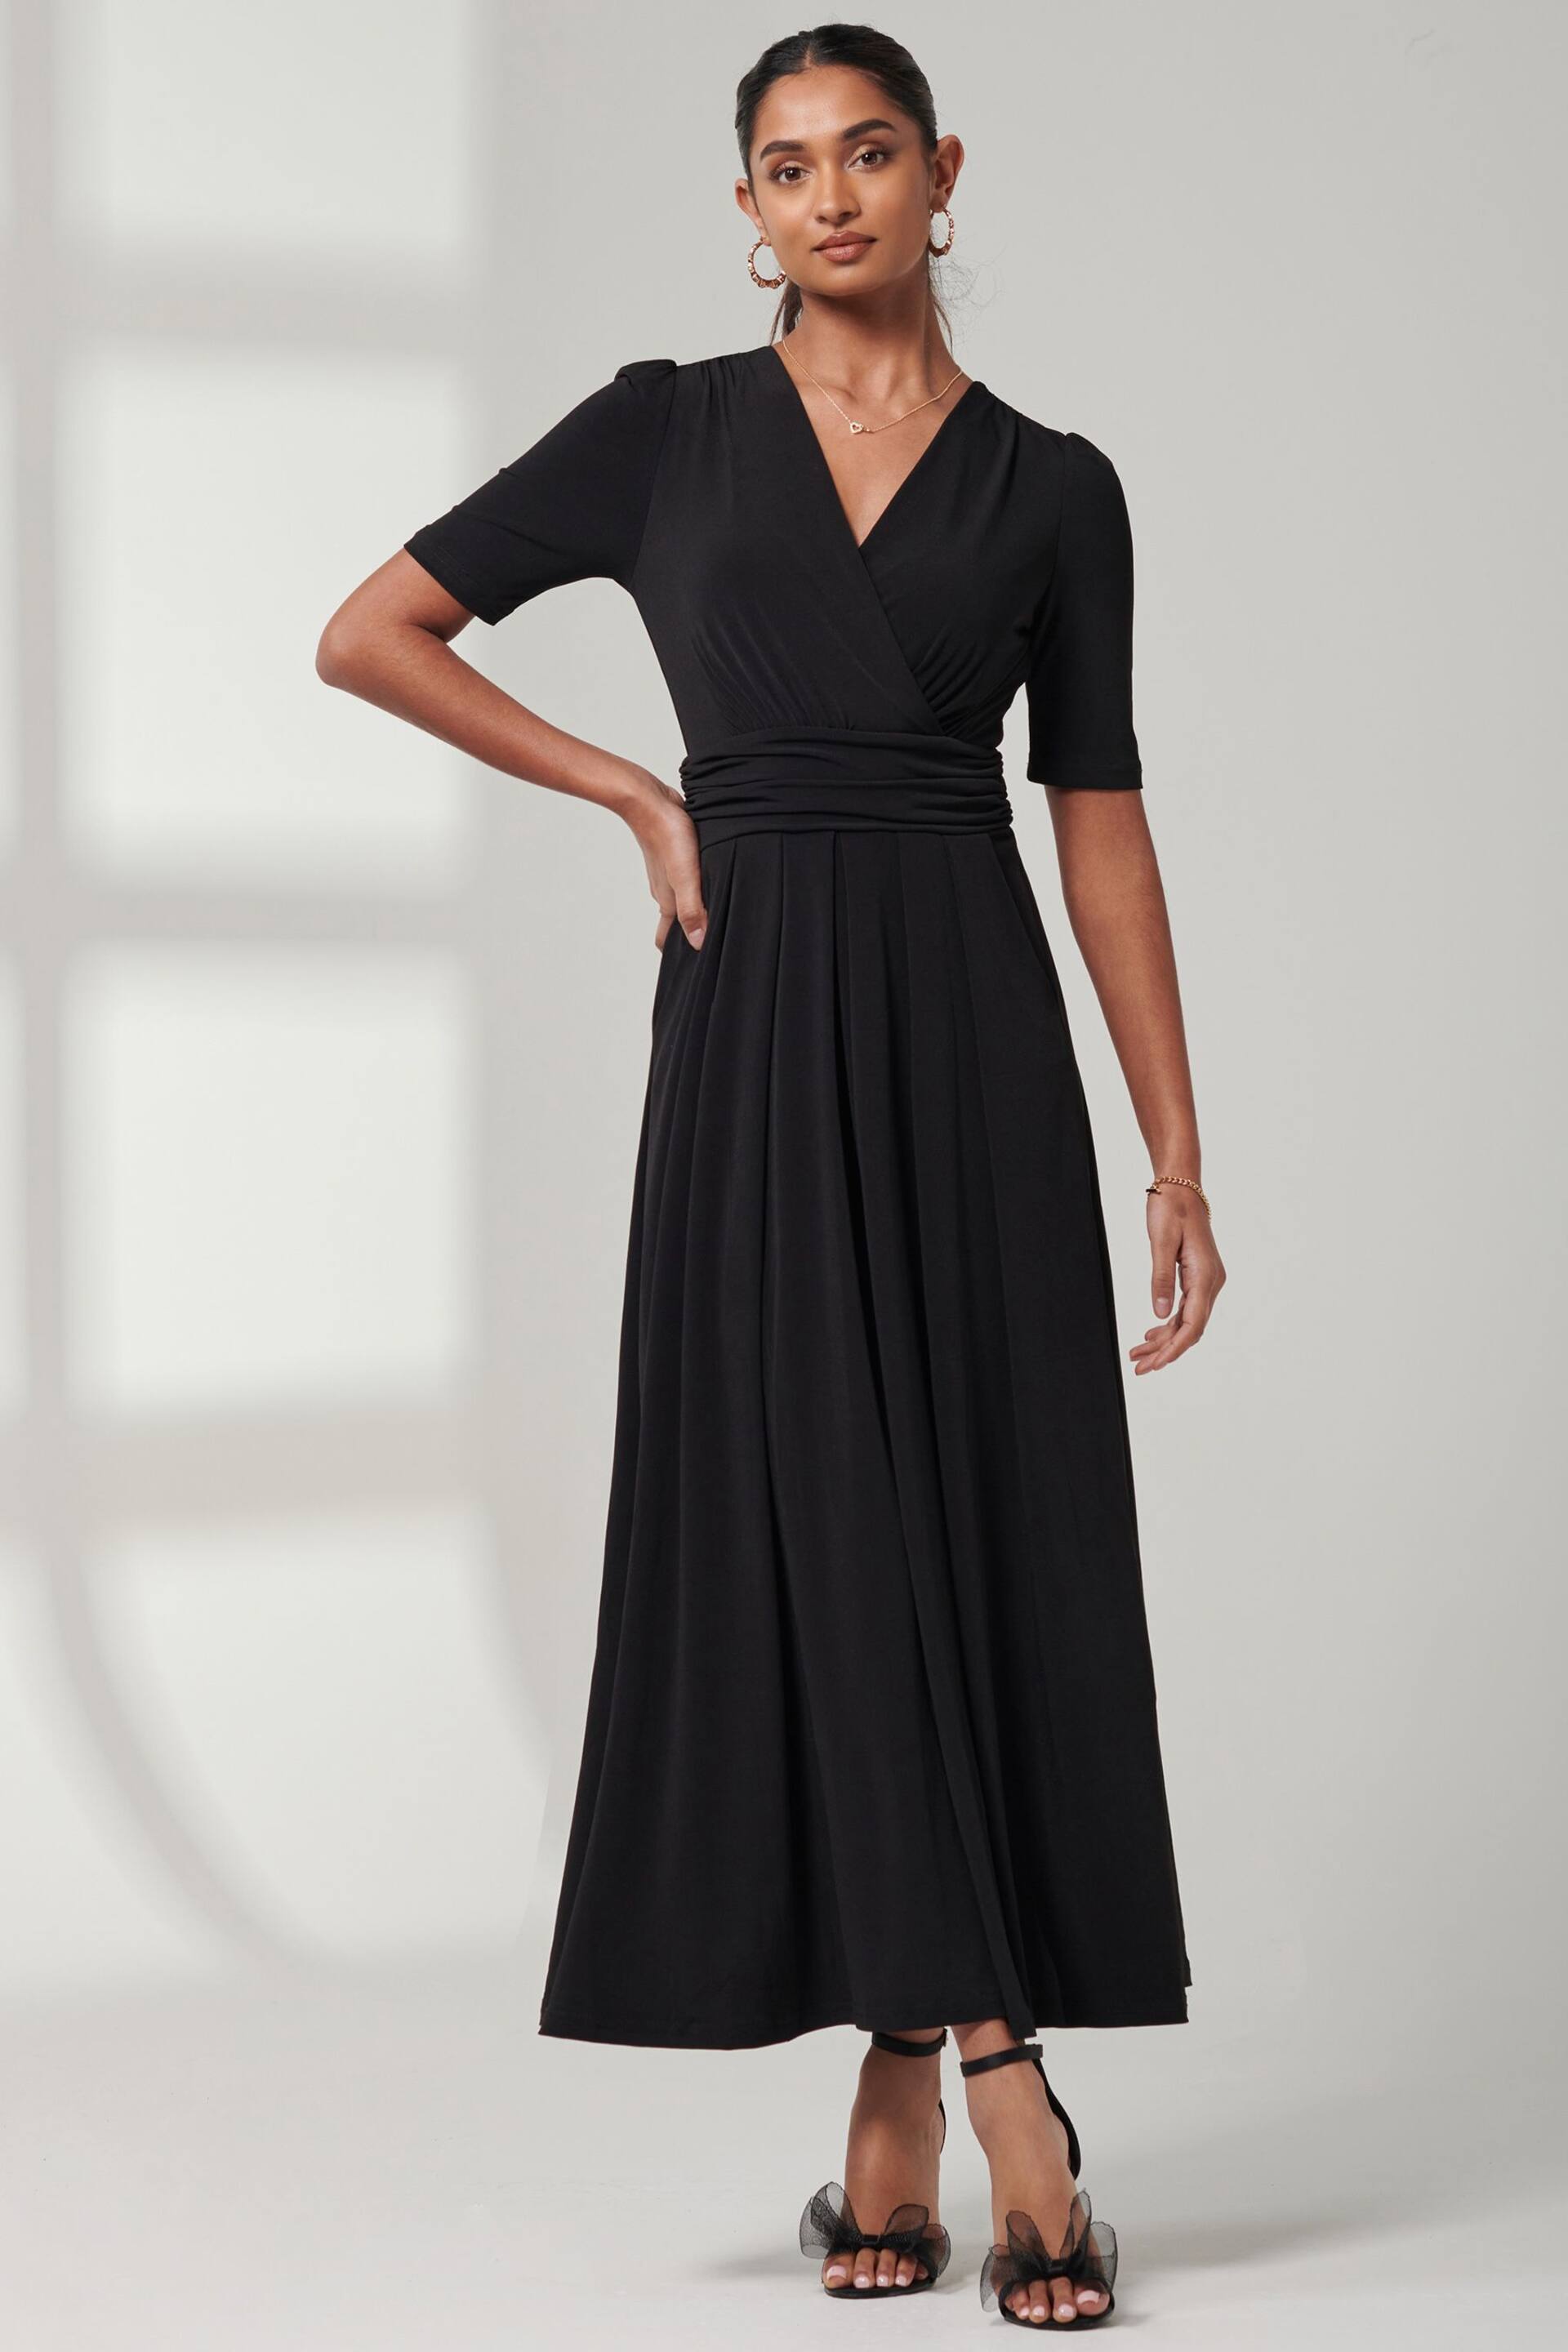 Jolie Moi Black Plain Jersey Wrap Front Maxi Dress - Image 1 of 6